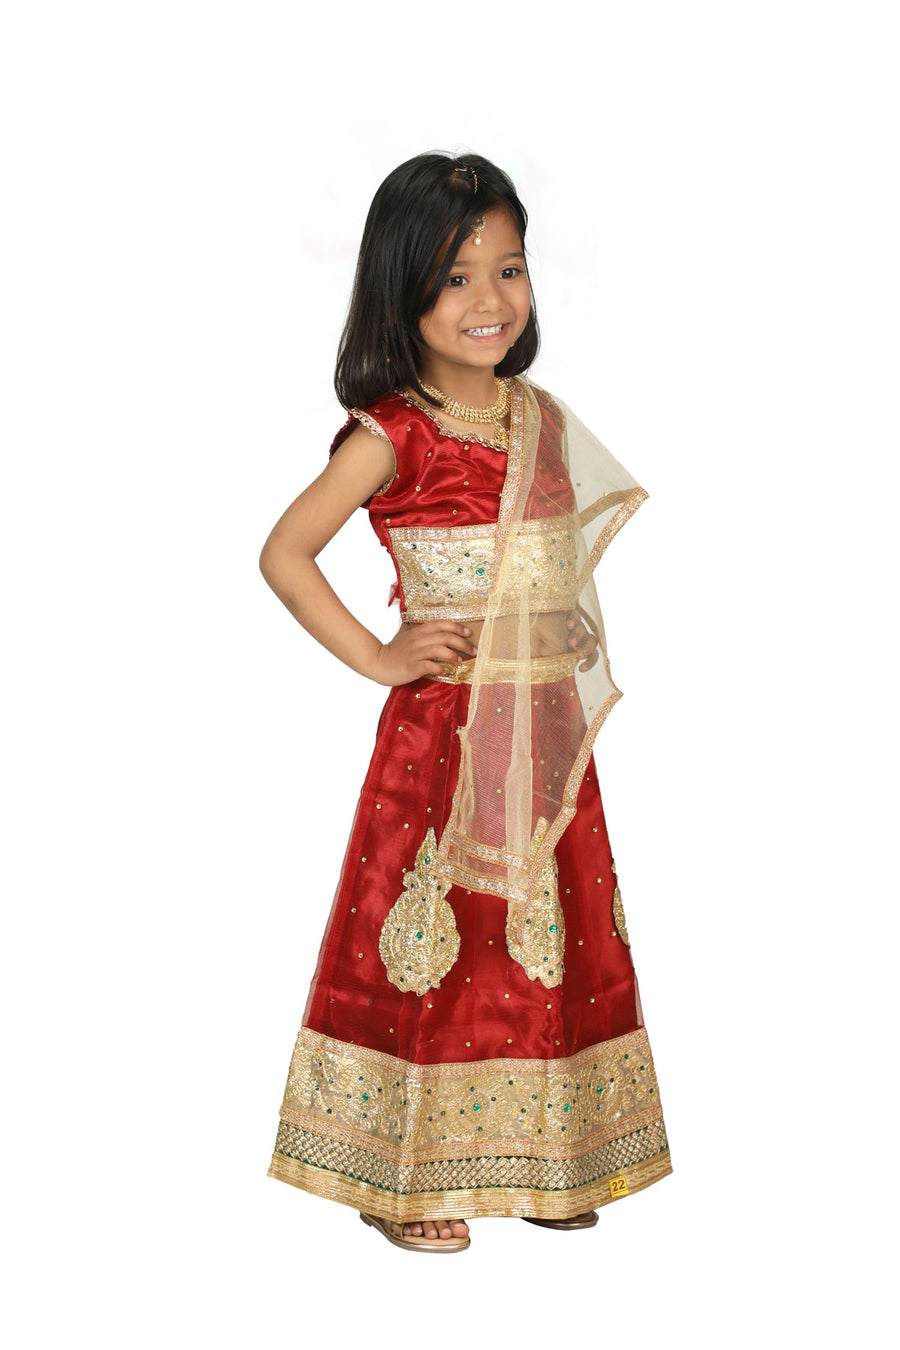 Radha Garba Lehenga Choli Kids Fancy Dress Costume for Girls - Premium - Maroon & Golden